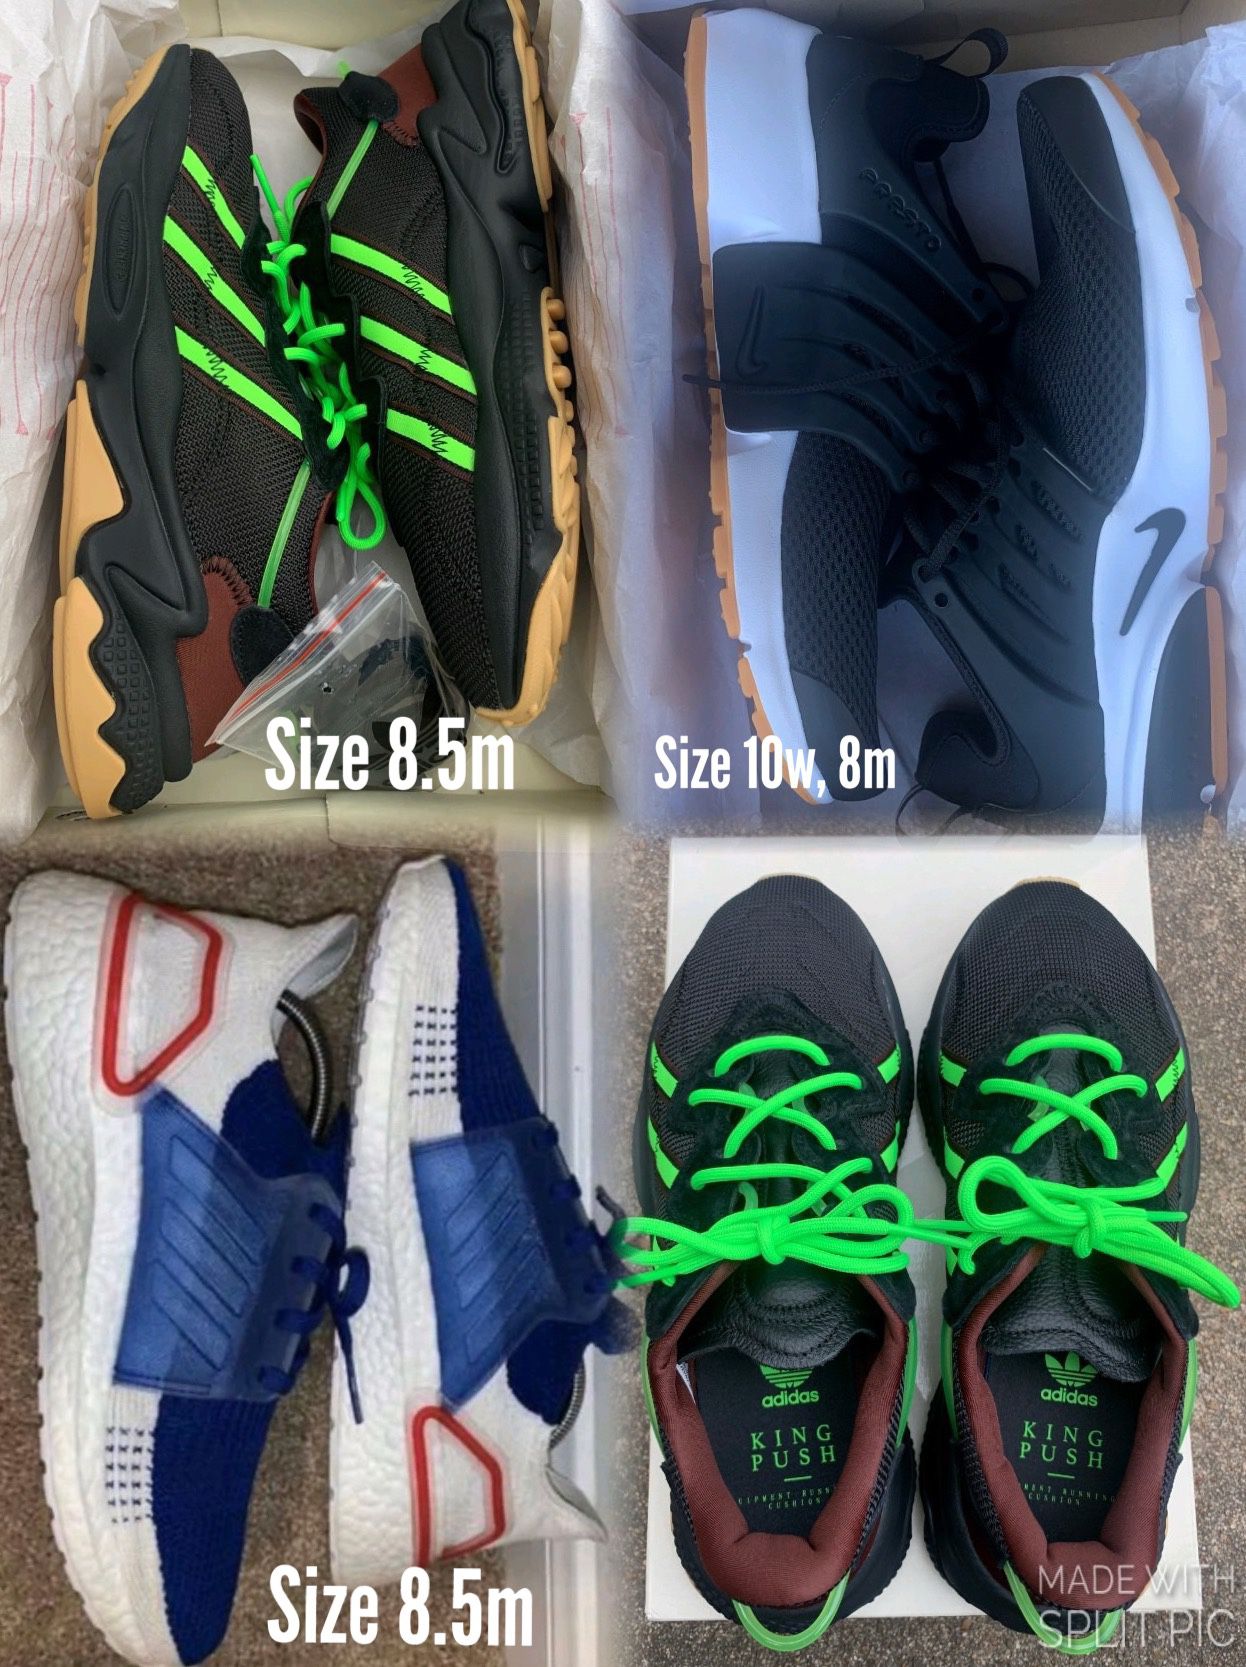 Adidas/Nike’s sizes 8, 8.5